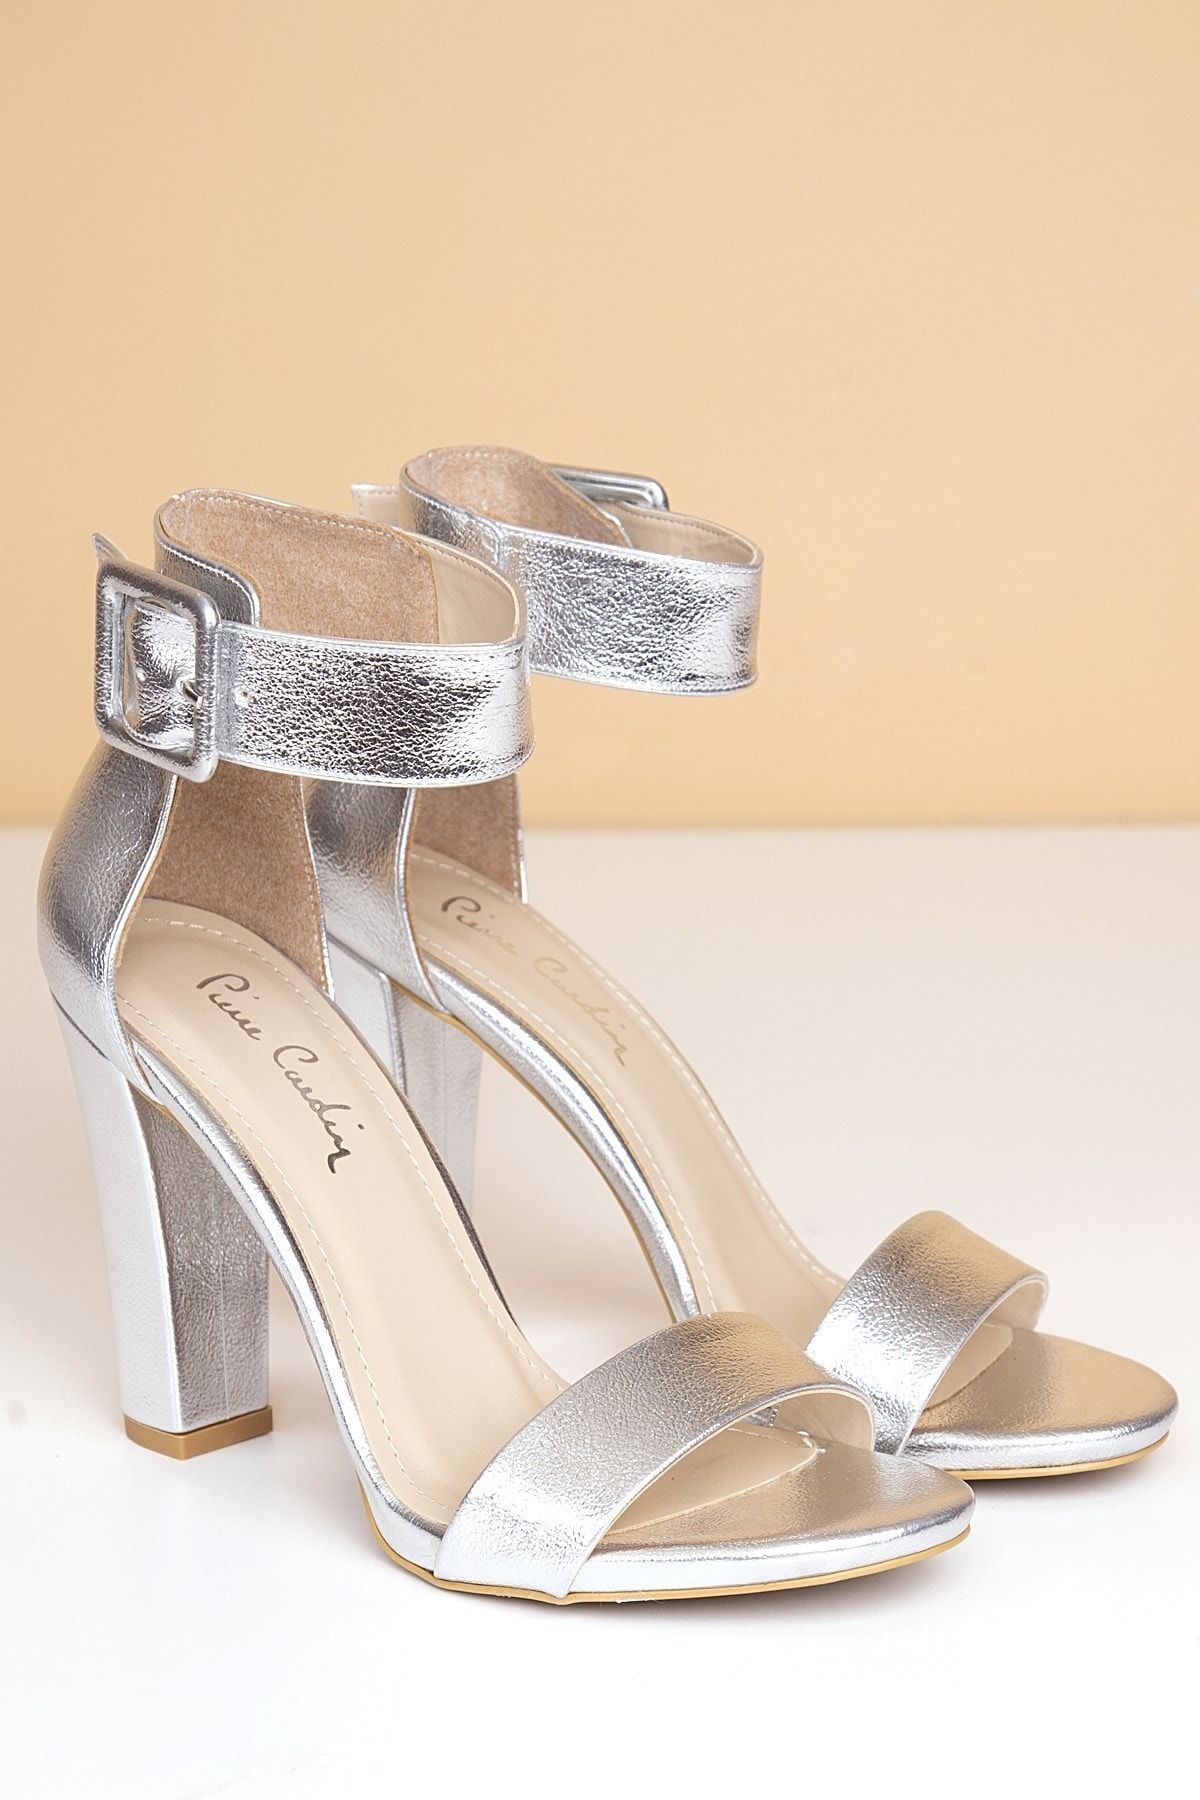 Pierre Cardin Pc-50171 Parlak Gümüş Kadın Ayakkabı